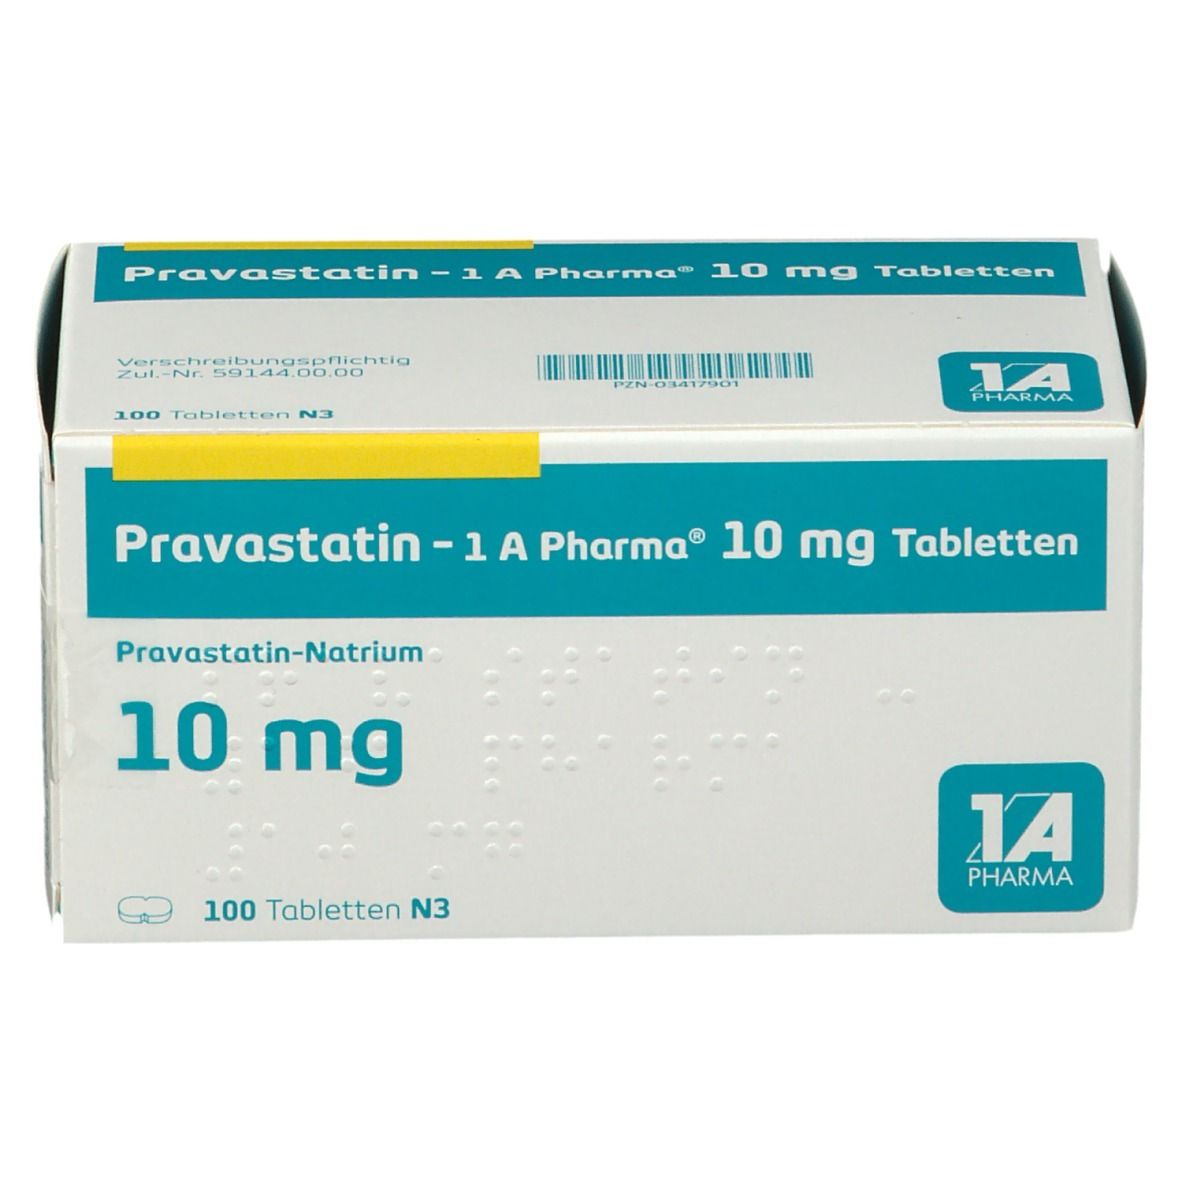 Pravastatin 1A Pharma® 10Mg